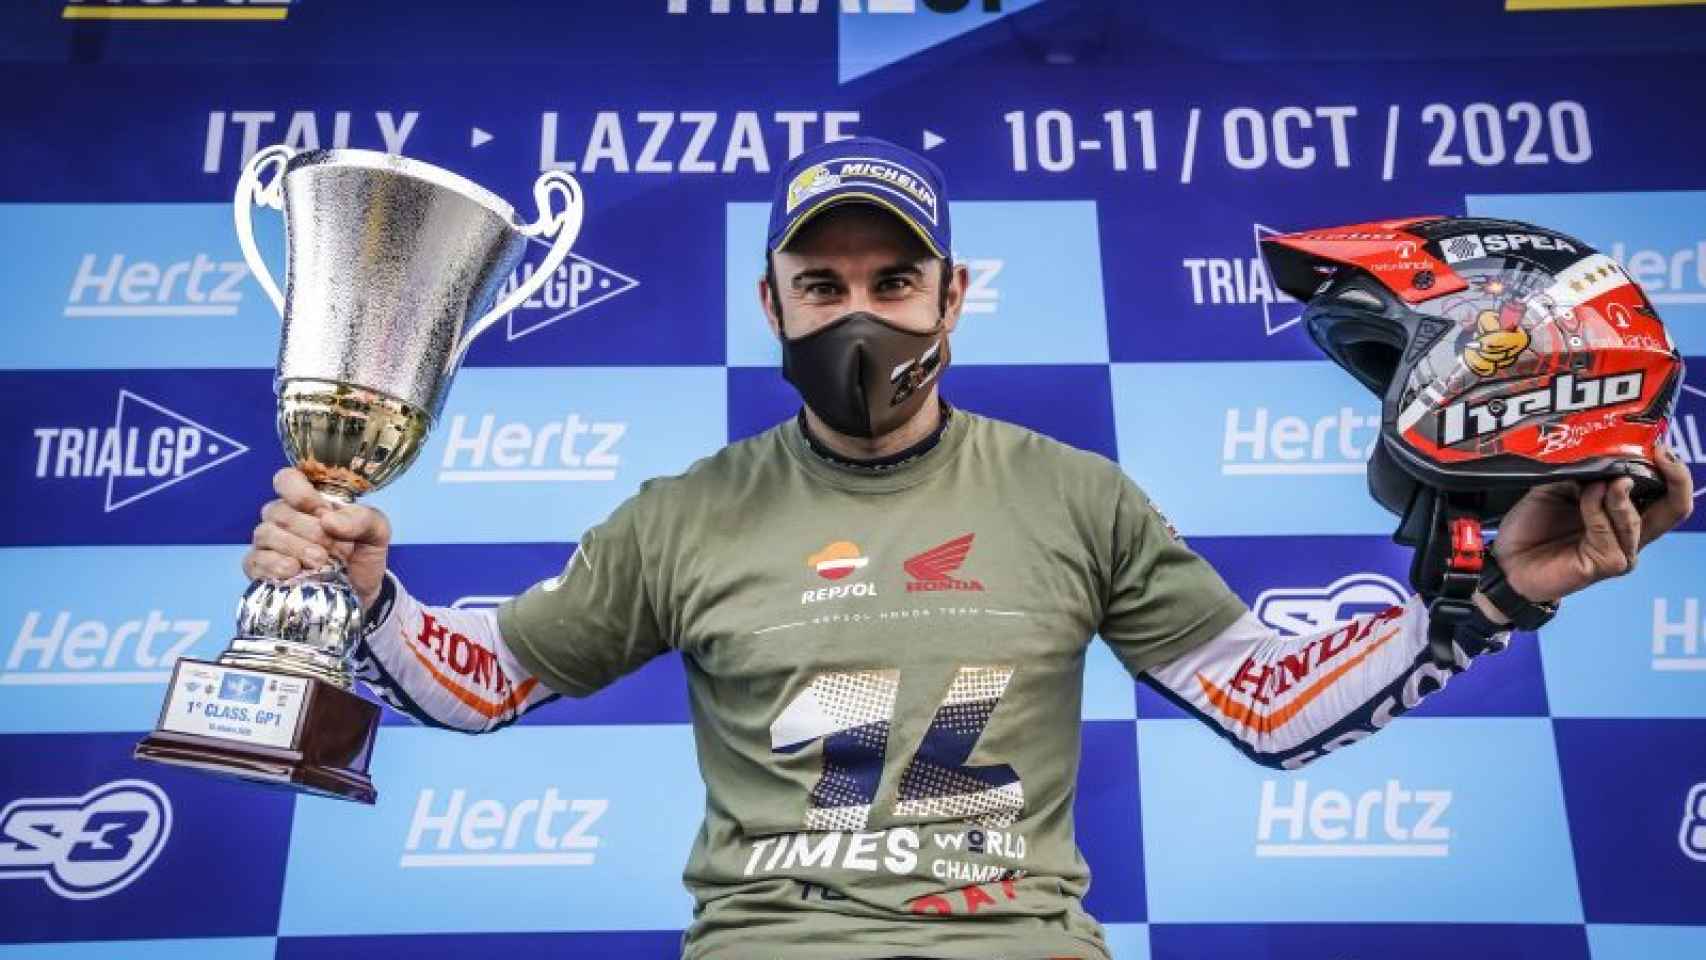 Toni Bou celebra su vigésimo octavo título de campeón del mundo de trial en Lazzate, Italia.